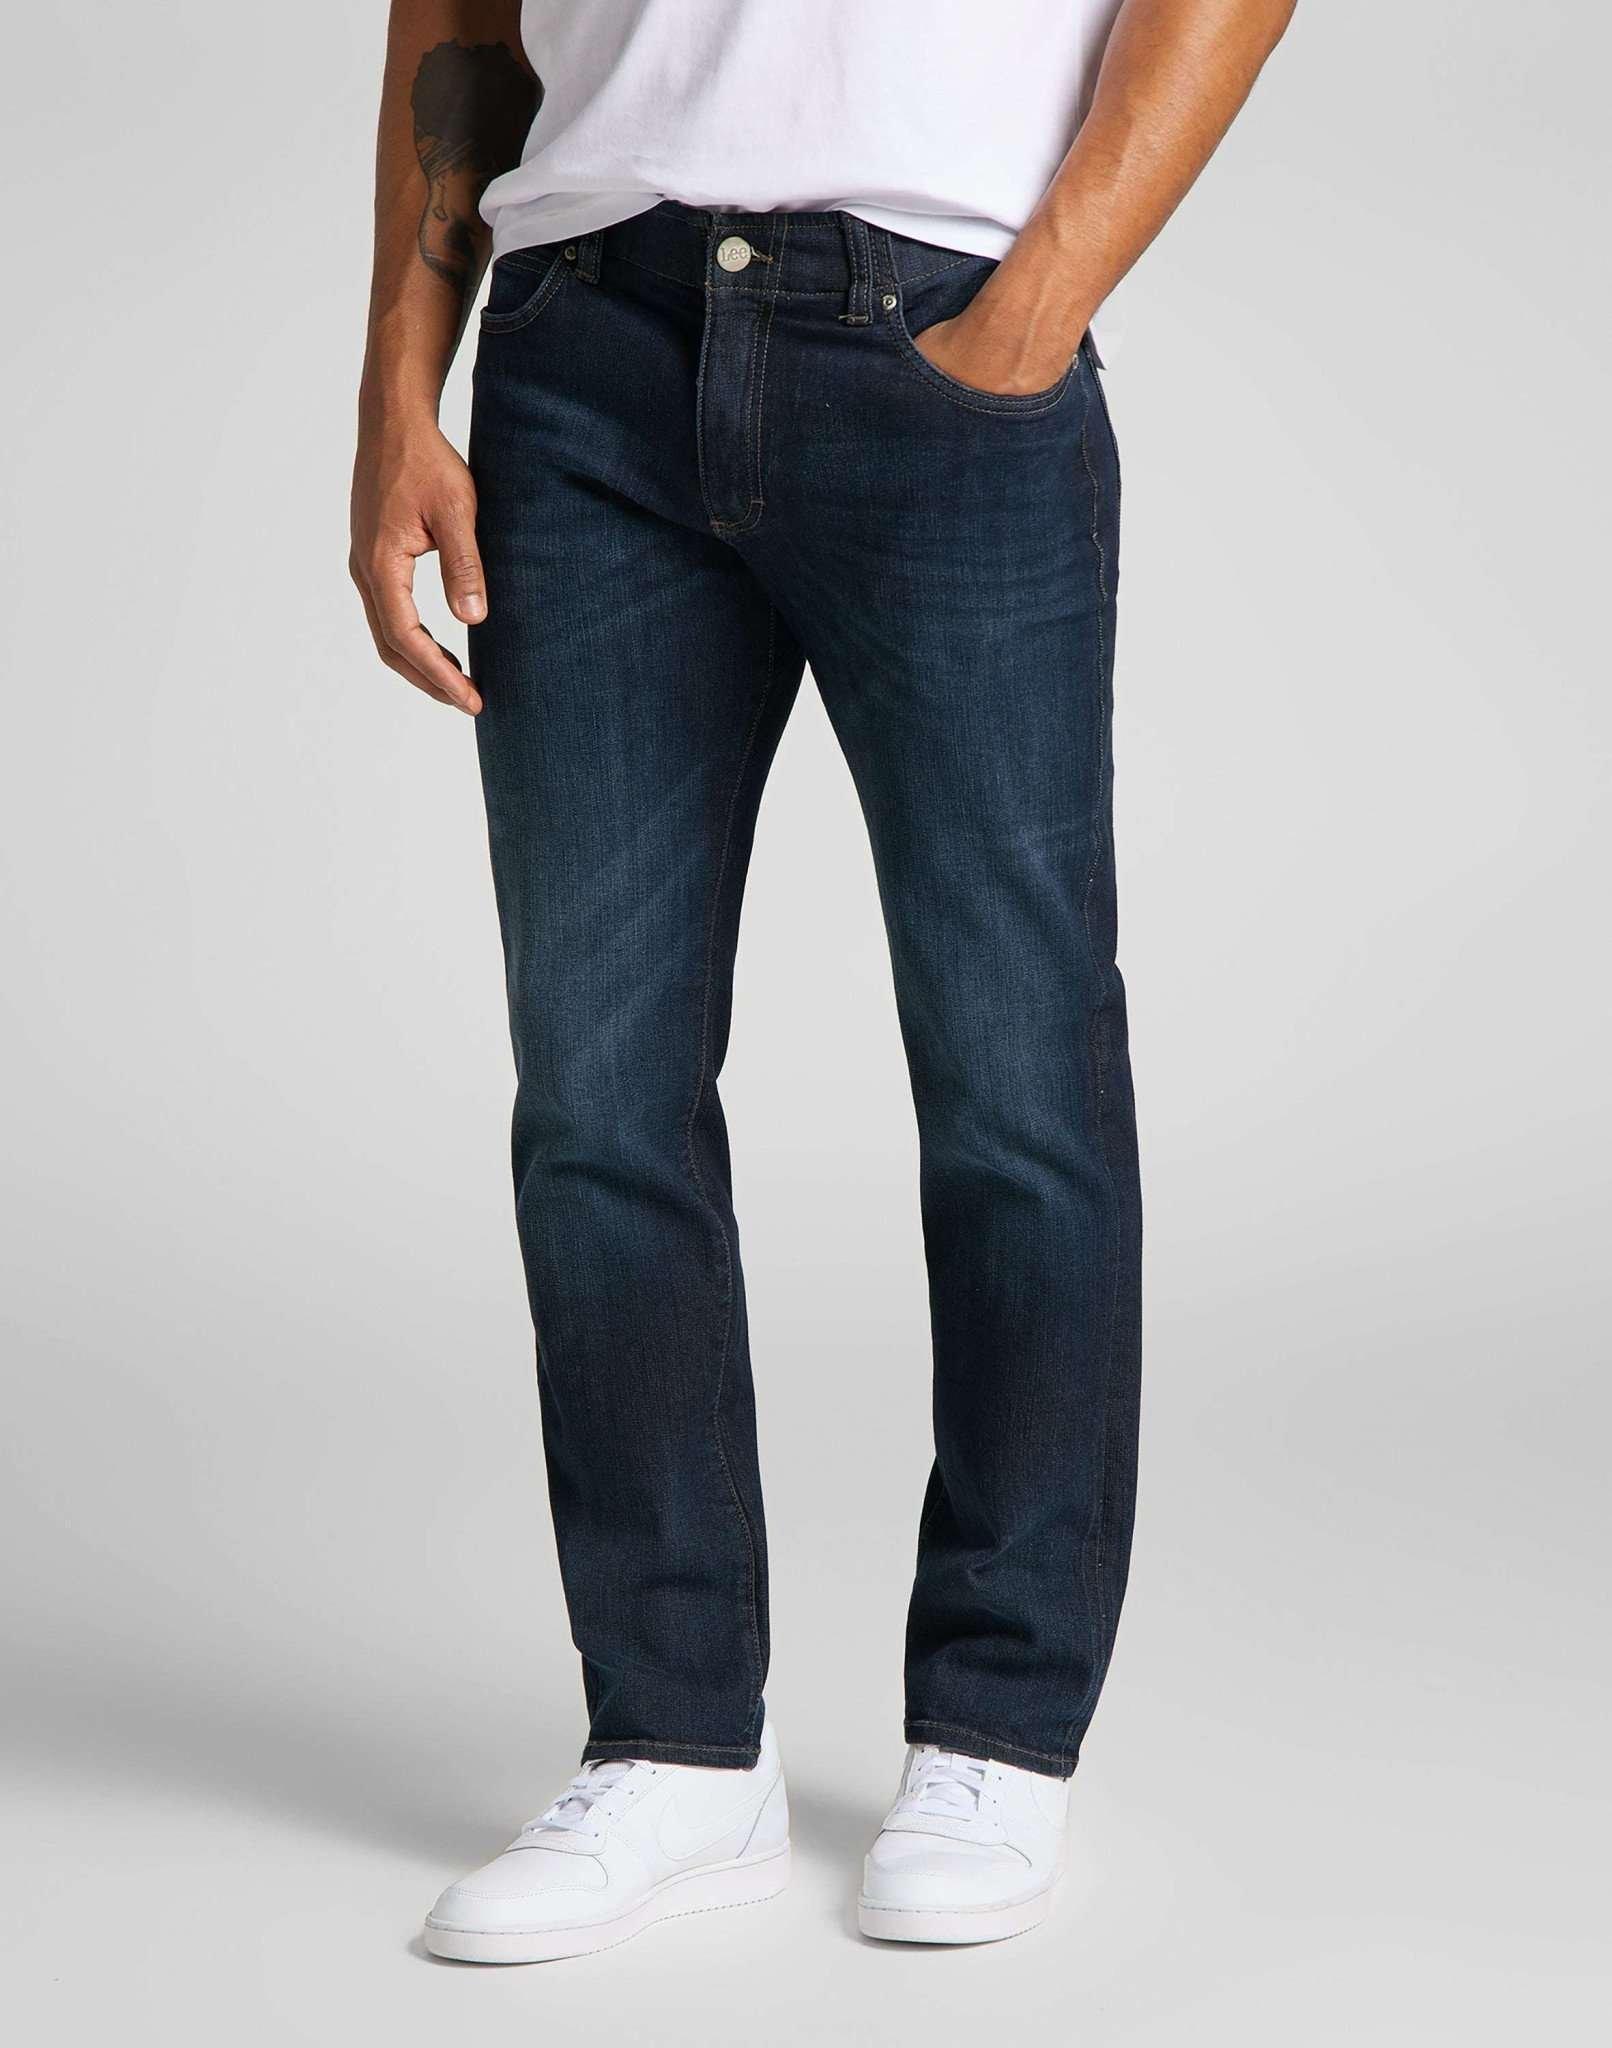 Jeans Straight Leg Xm Herren Blau Denim L30/W32 von Lee